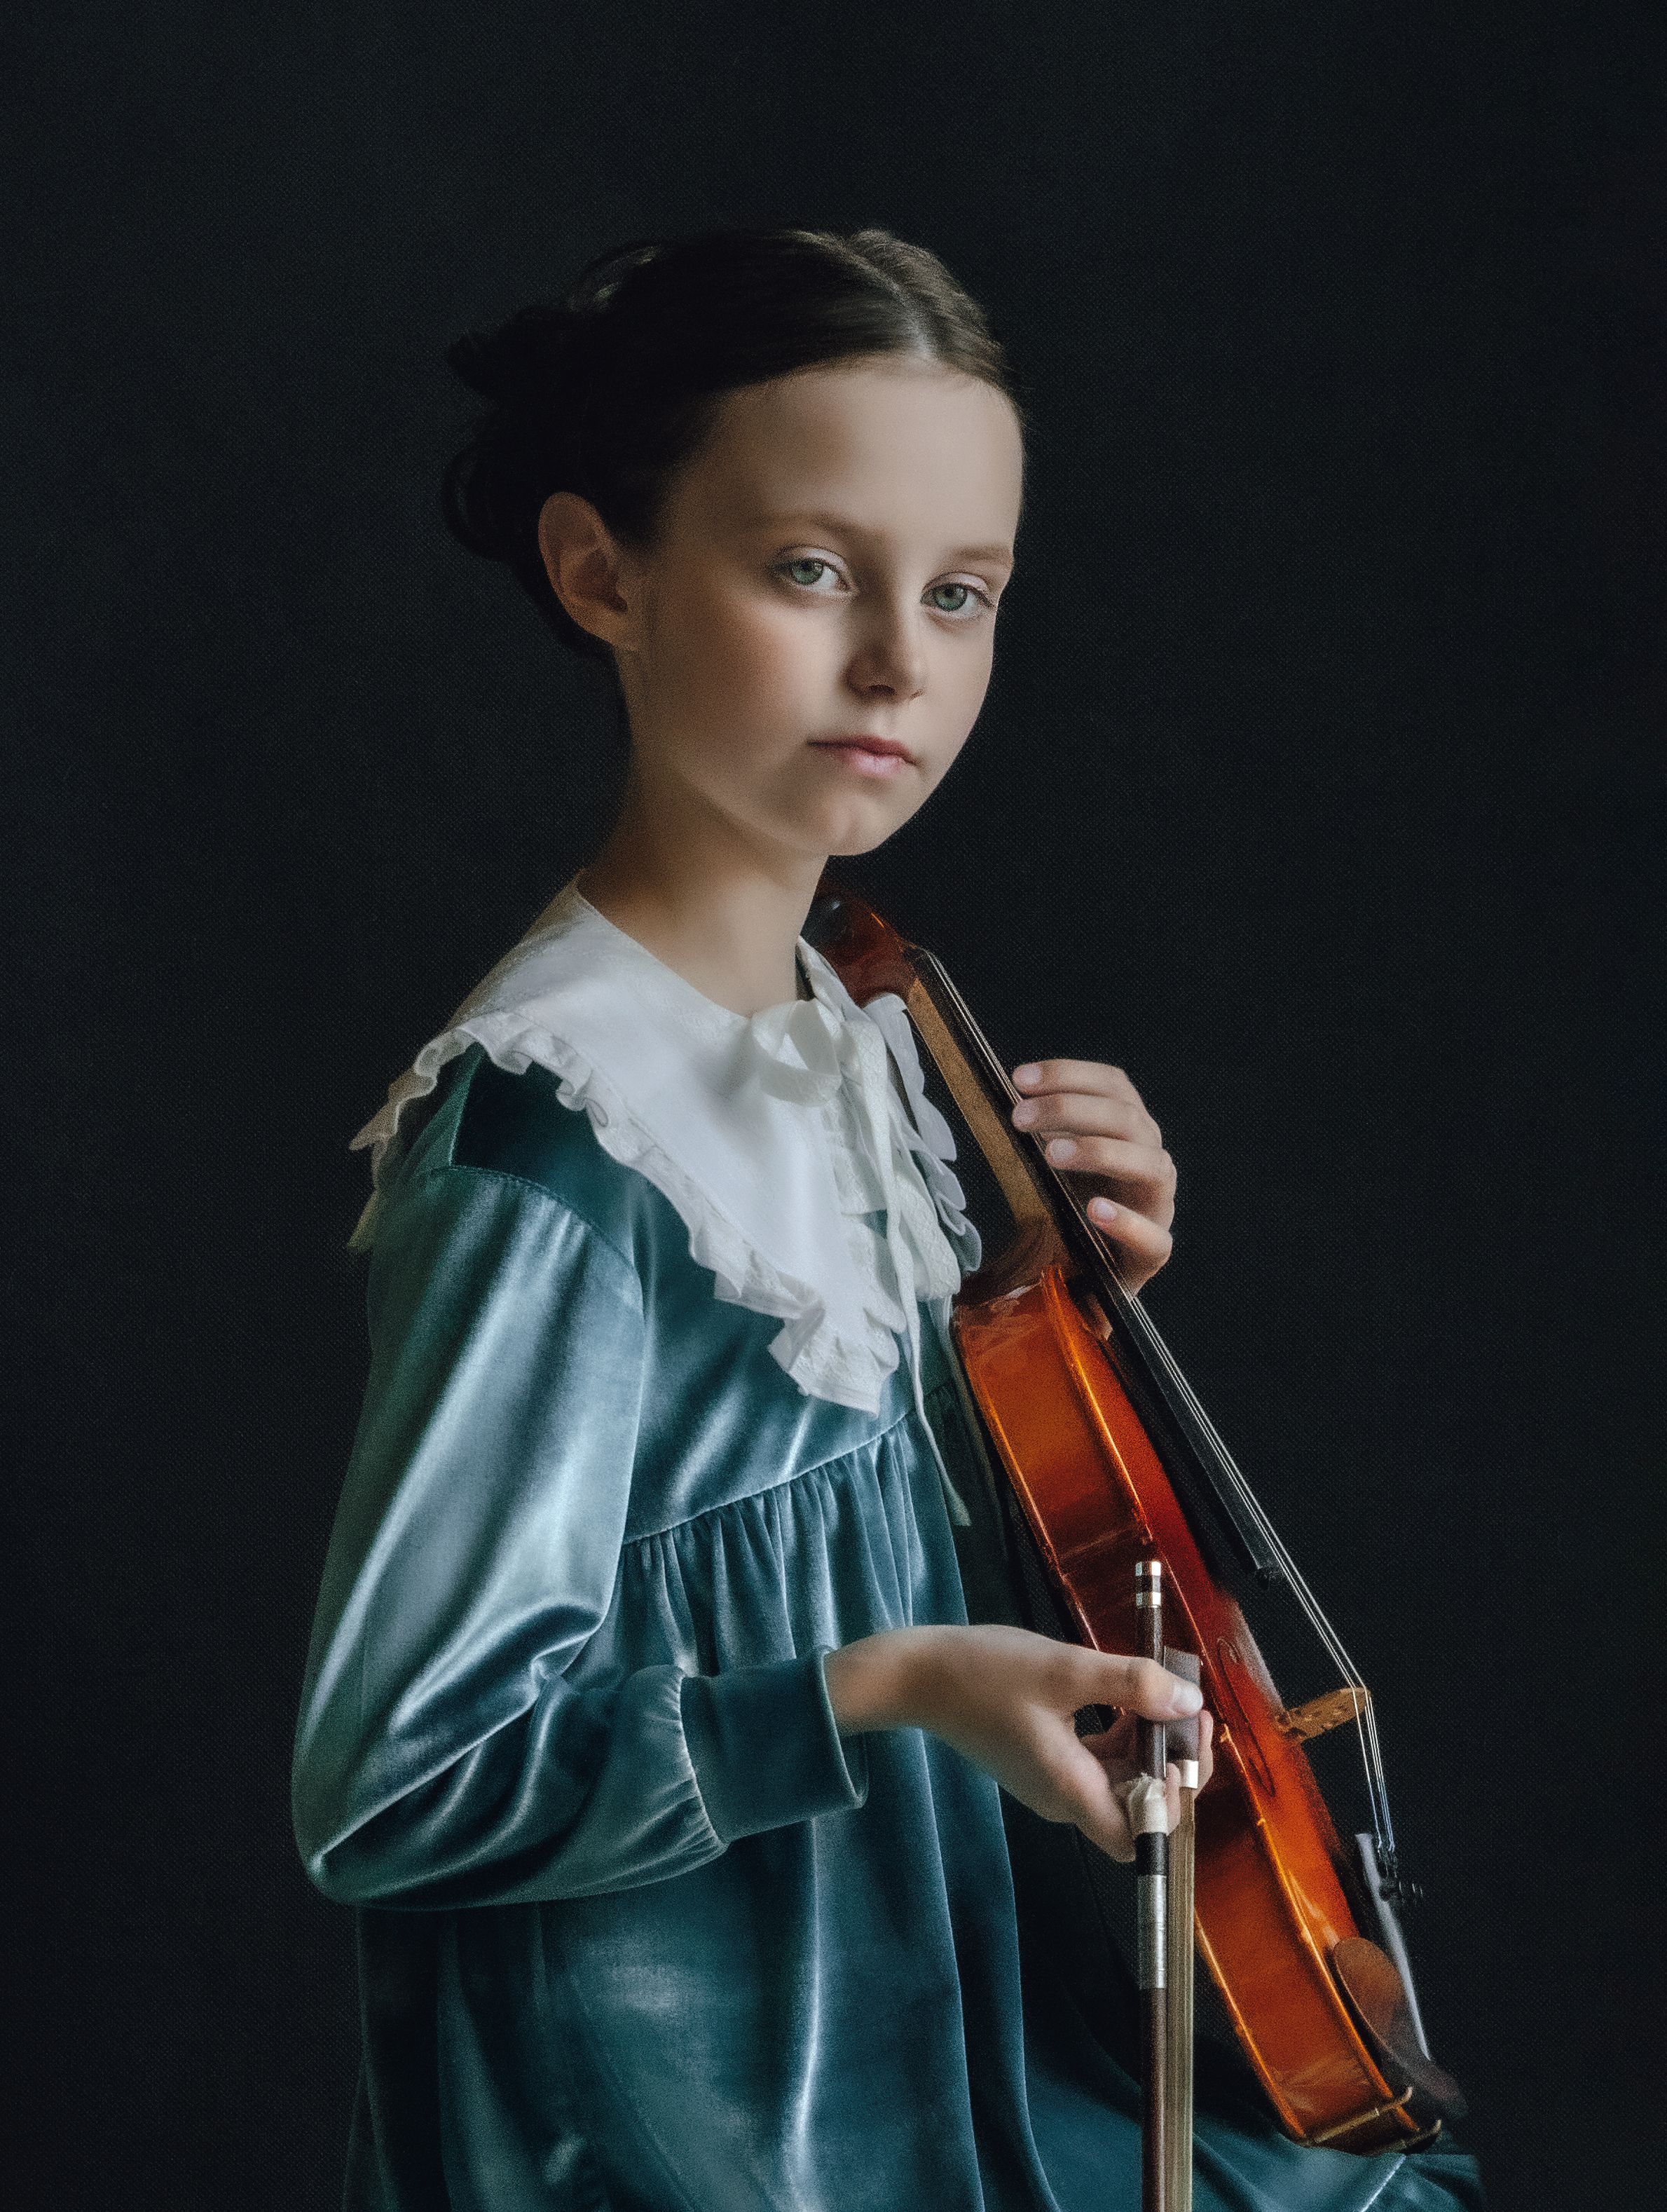 скрипачка,детский портрет,портрет девочки со скрипкой, портрет девочки, Lena Melnikova